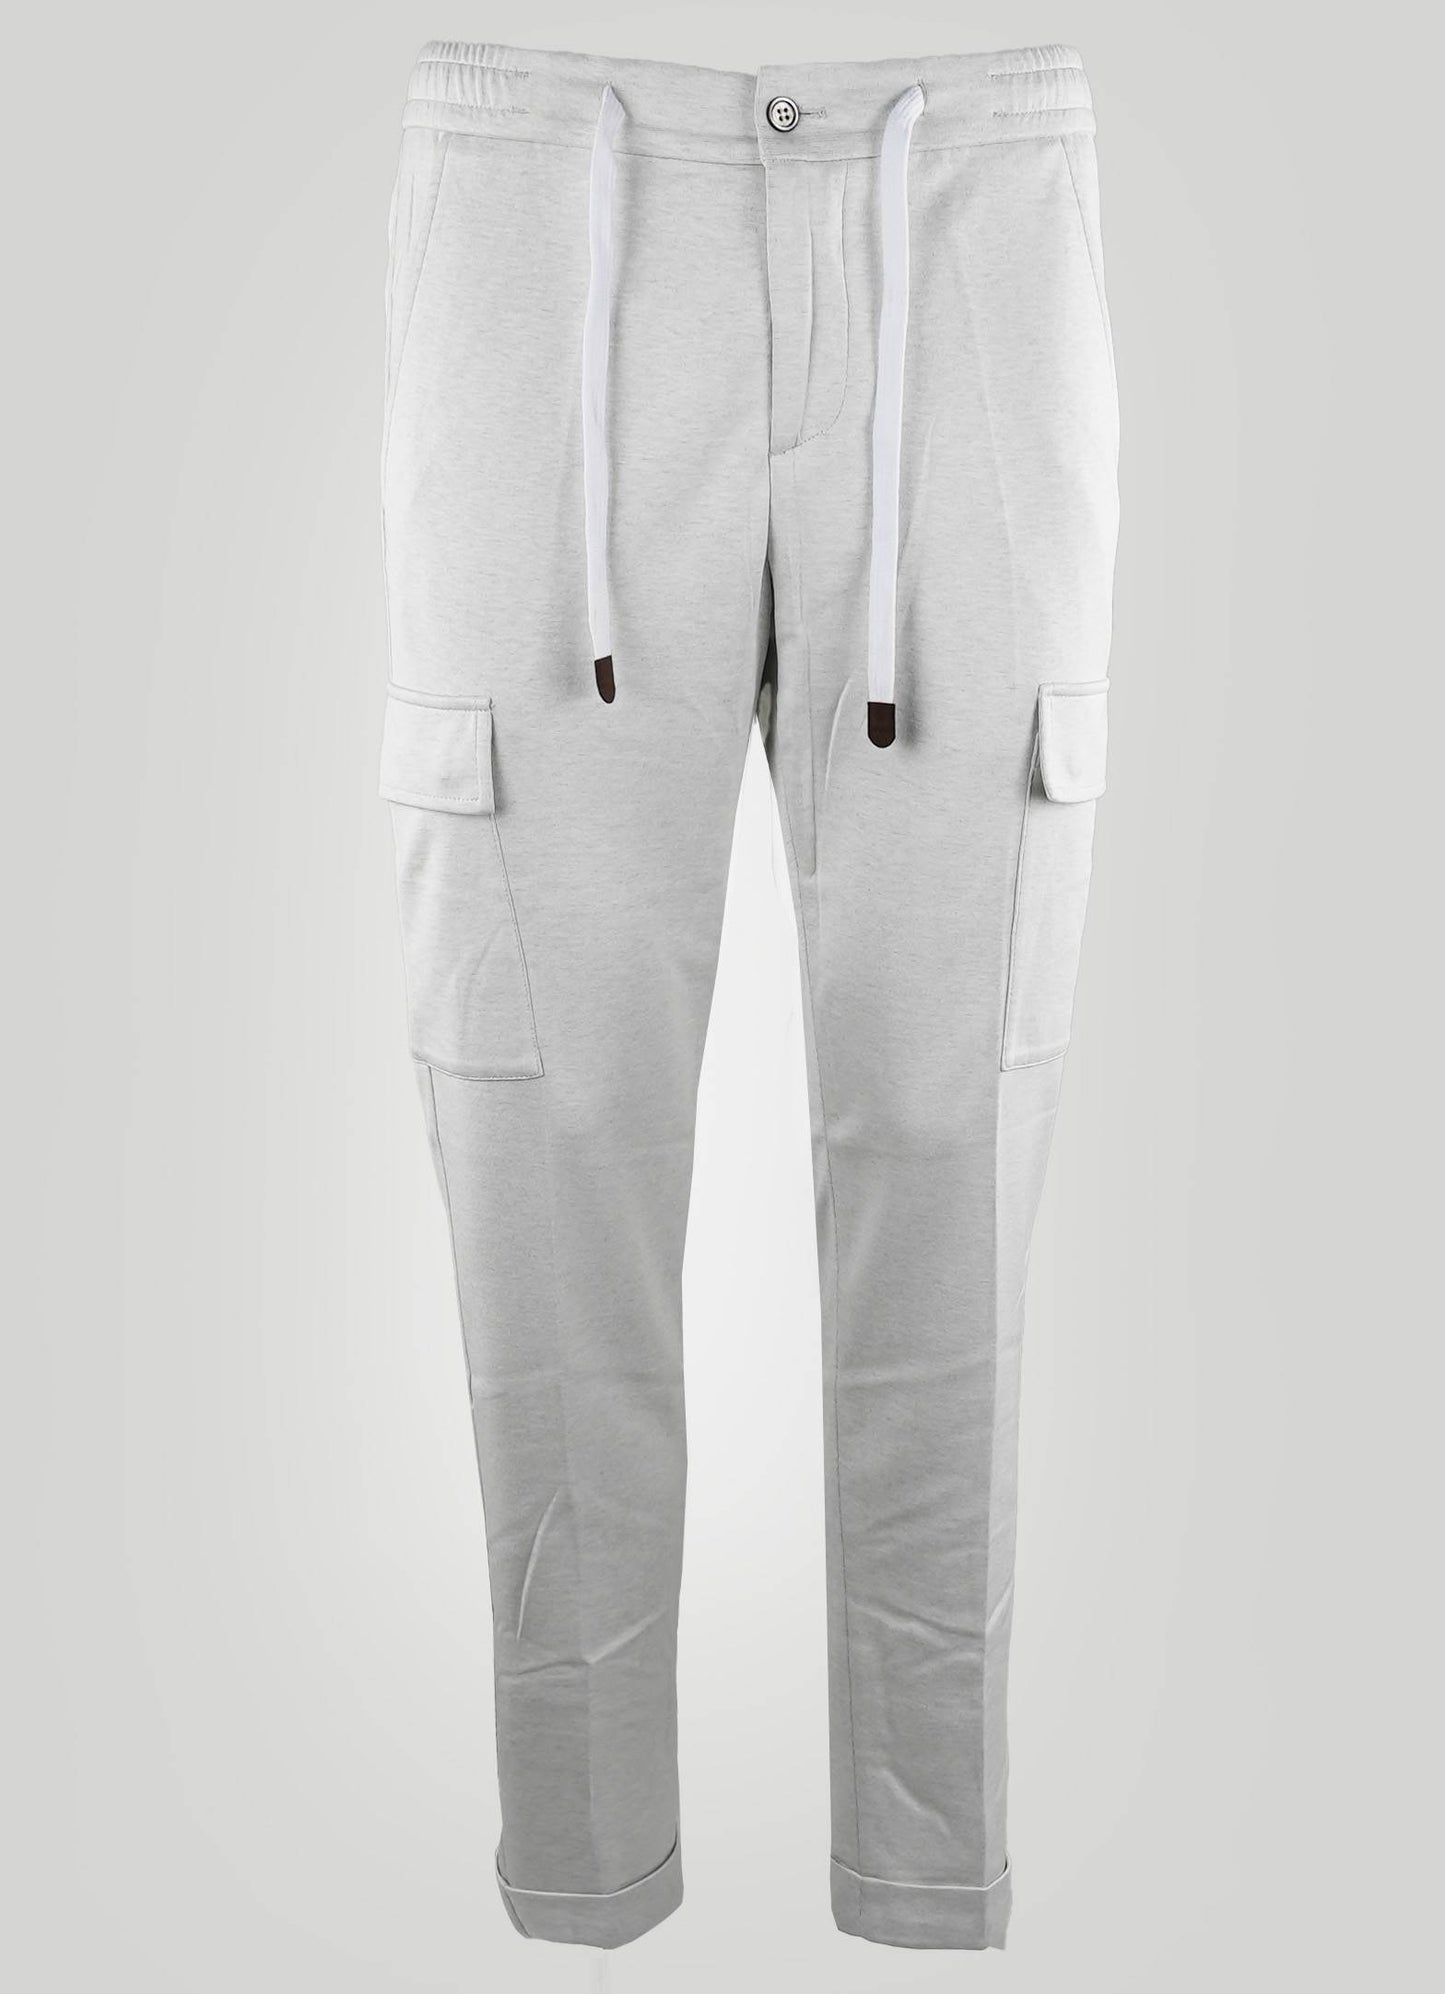 Marco Pescarolo Pantalones cargo Pa gris de algodón y seda 